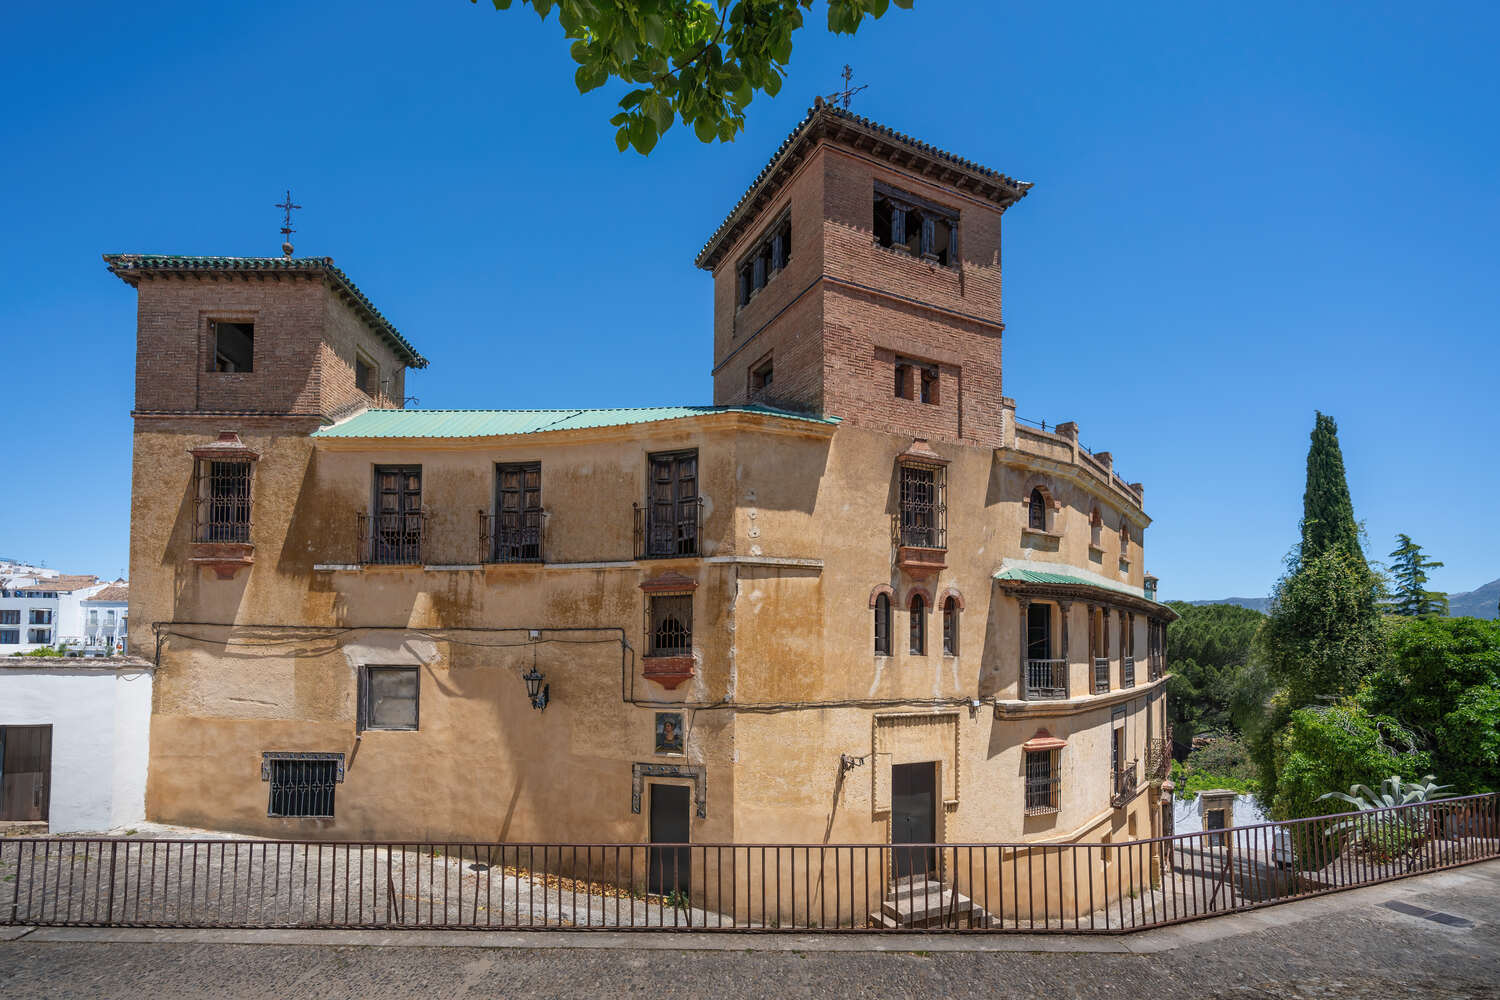 Casa del Rey Moro in Ronda